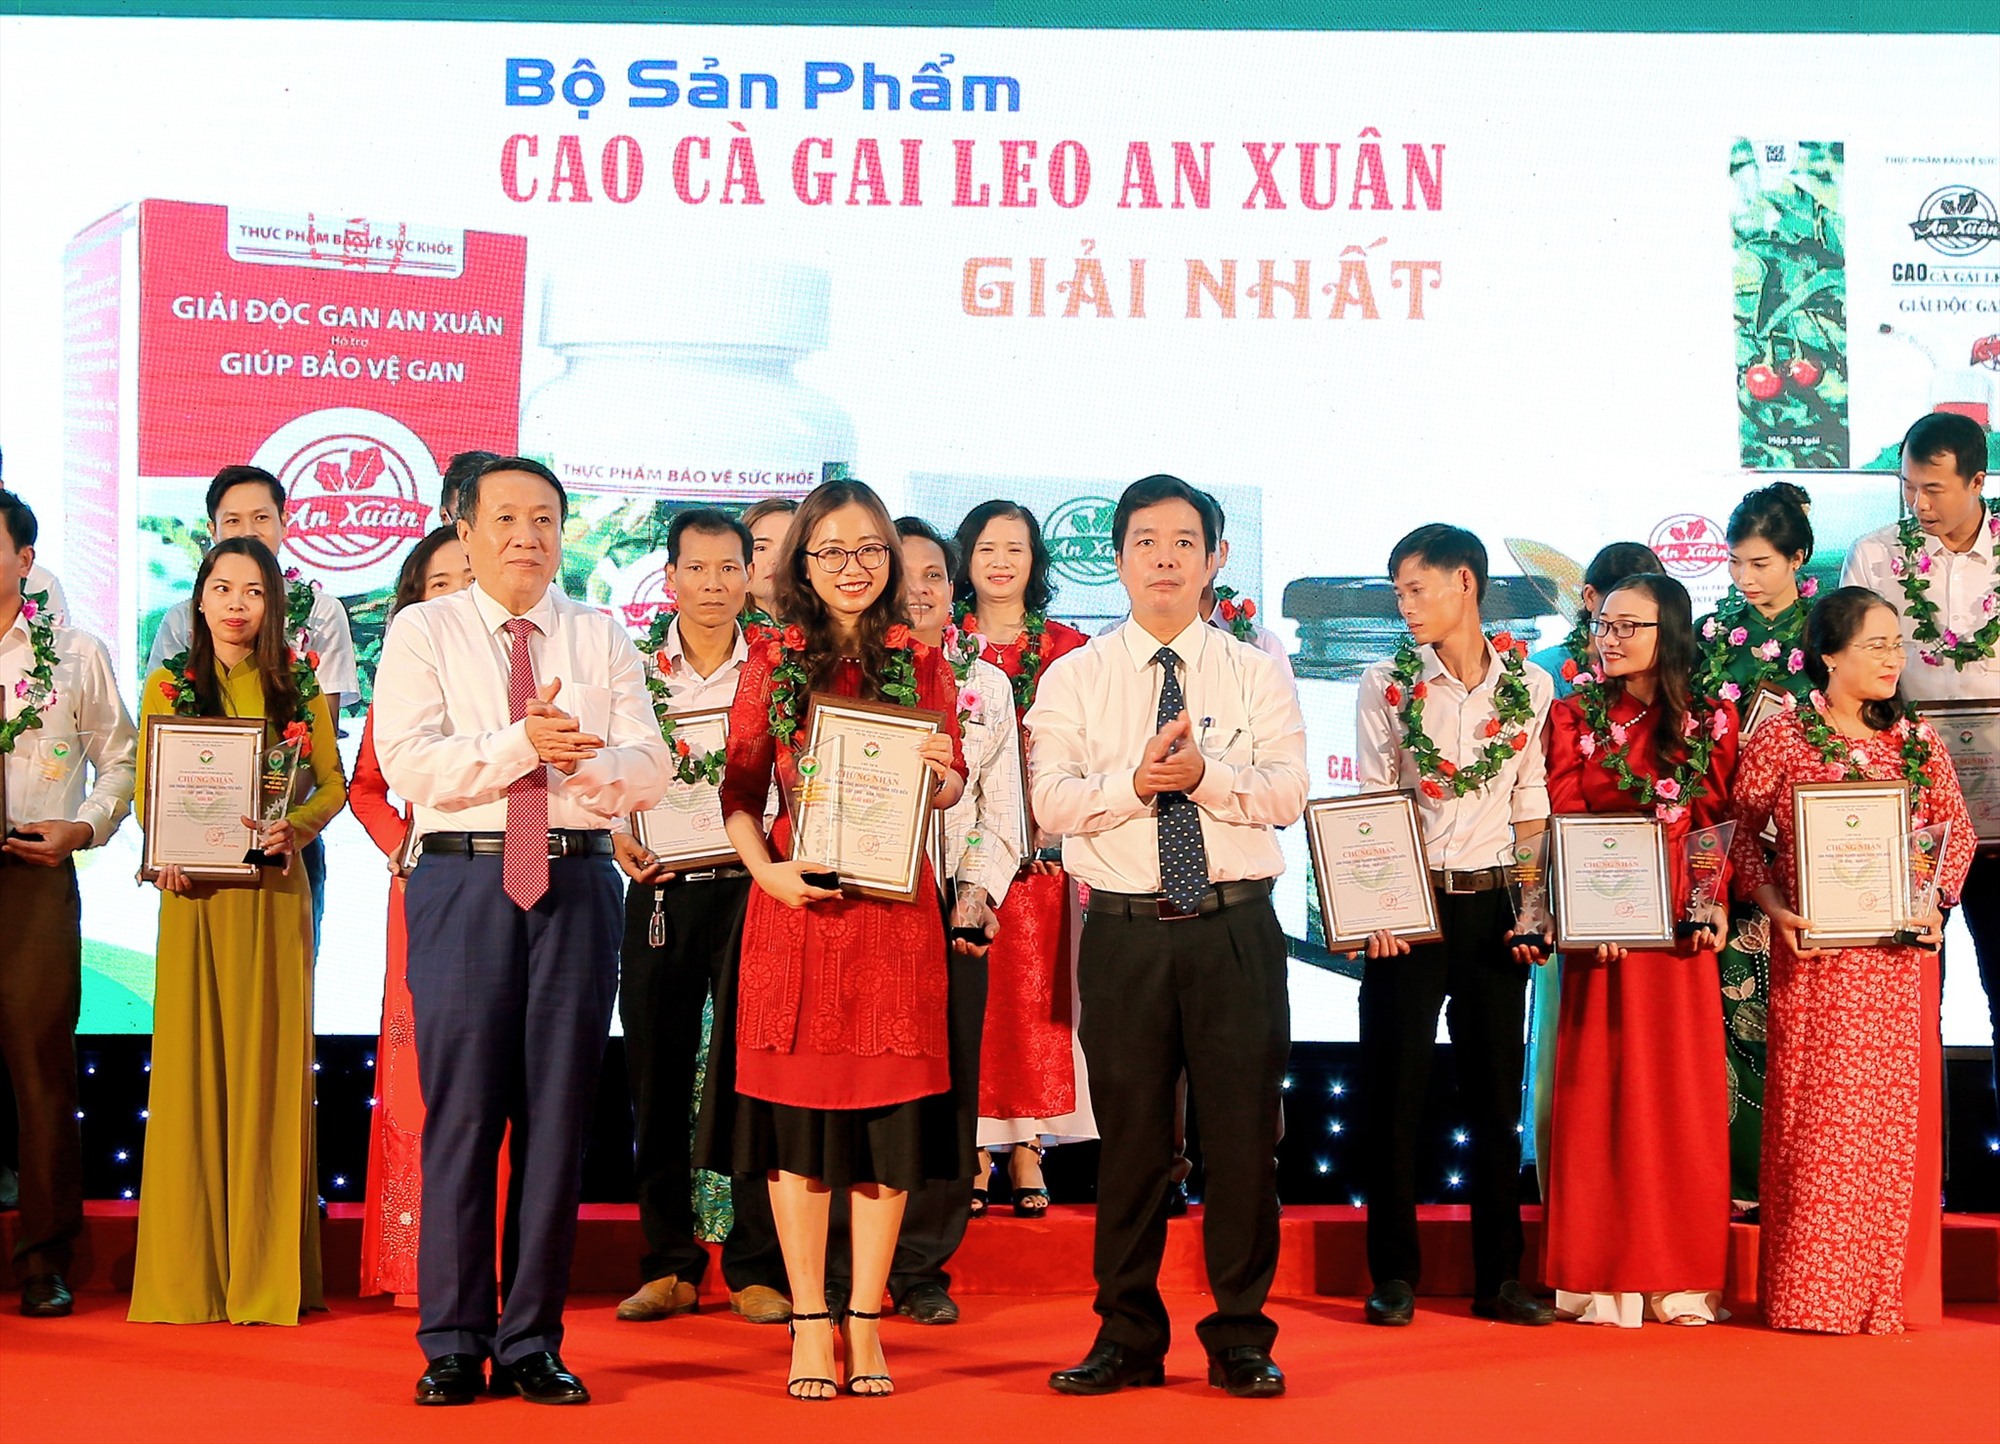 Bộ sản phẩm cao cà gai leo An Xuân đạt giải Nhất chứng nhận sản phẩm công nghiệp nông thôn tiêu biểu tỉnh Quảng Trị năm 2022